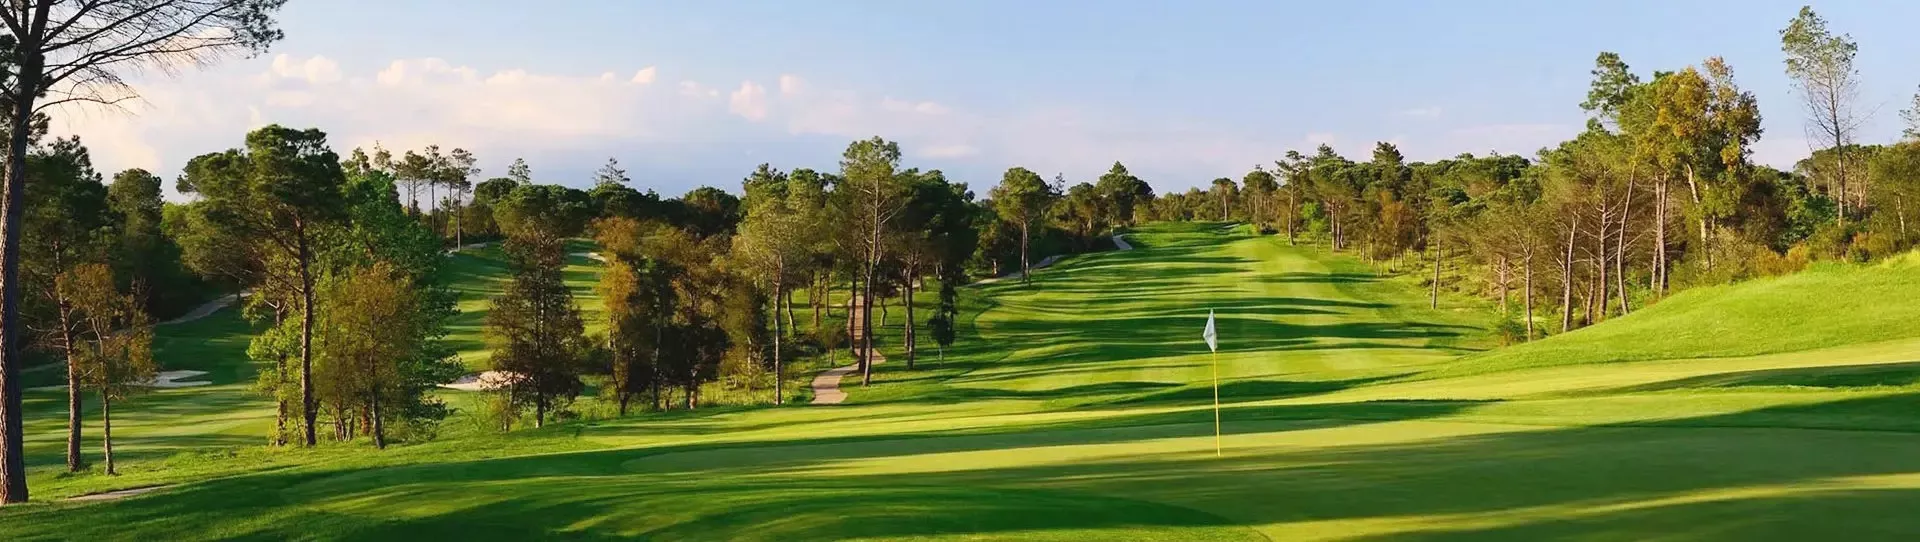 Spain golf courses - PGA Catalunya - Tour Course - Photo 1